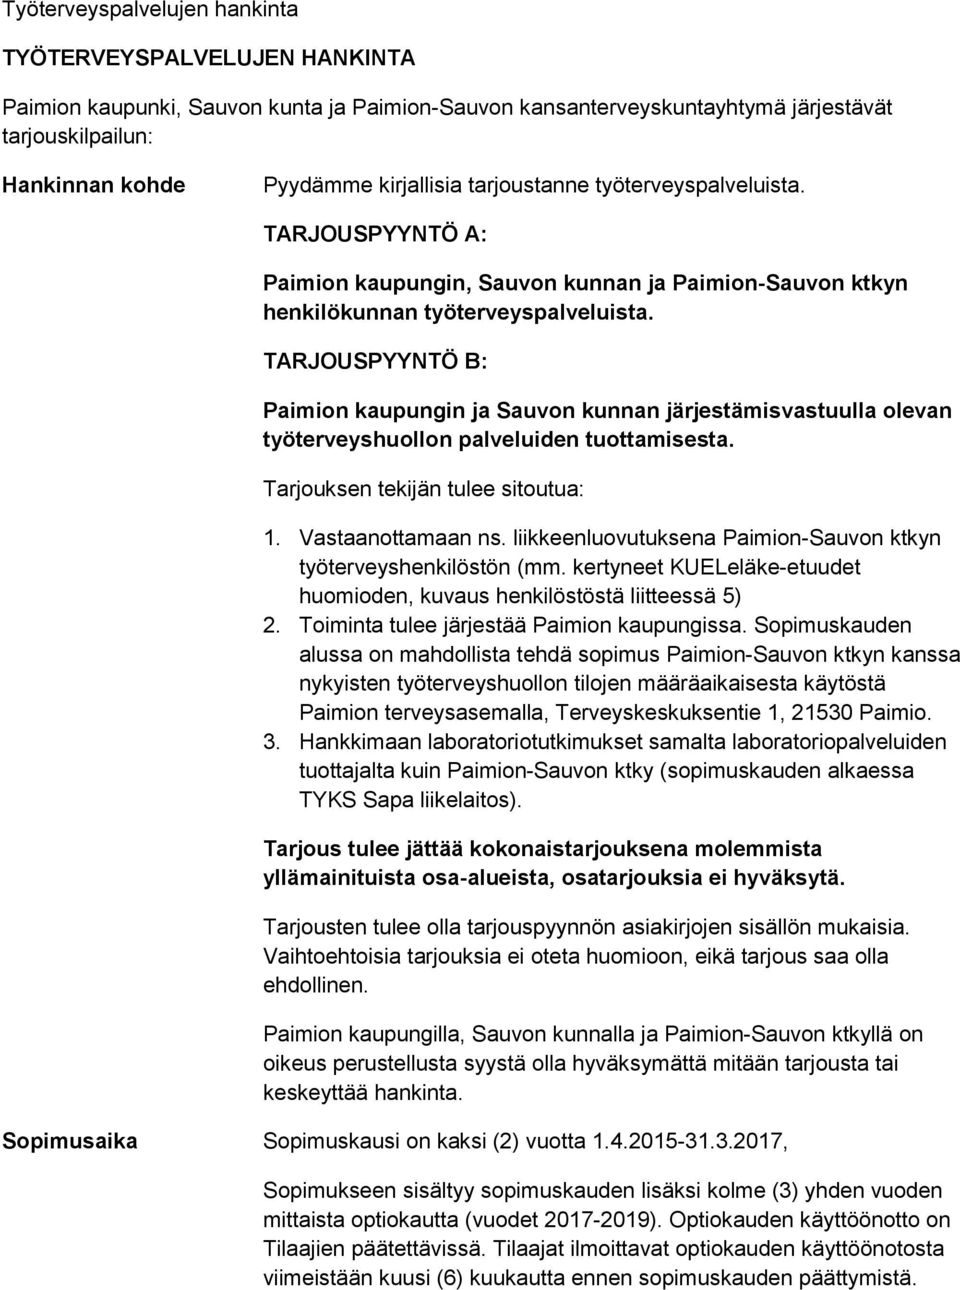 TARJOUSPYYNTÖ B: Paimion kaupungin ja Sauvon kunnan järjestämisvastuulla olevan työterveyshuollon palveluiden tuottamisesta. Tarjouksen tekijän tulee sitoutua: 1. Vastaanottamaan ns.